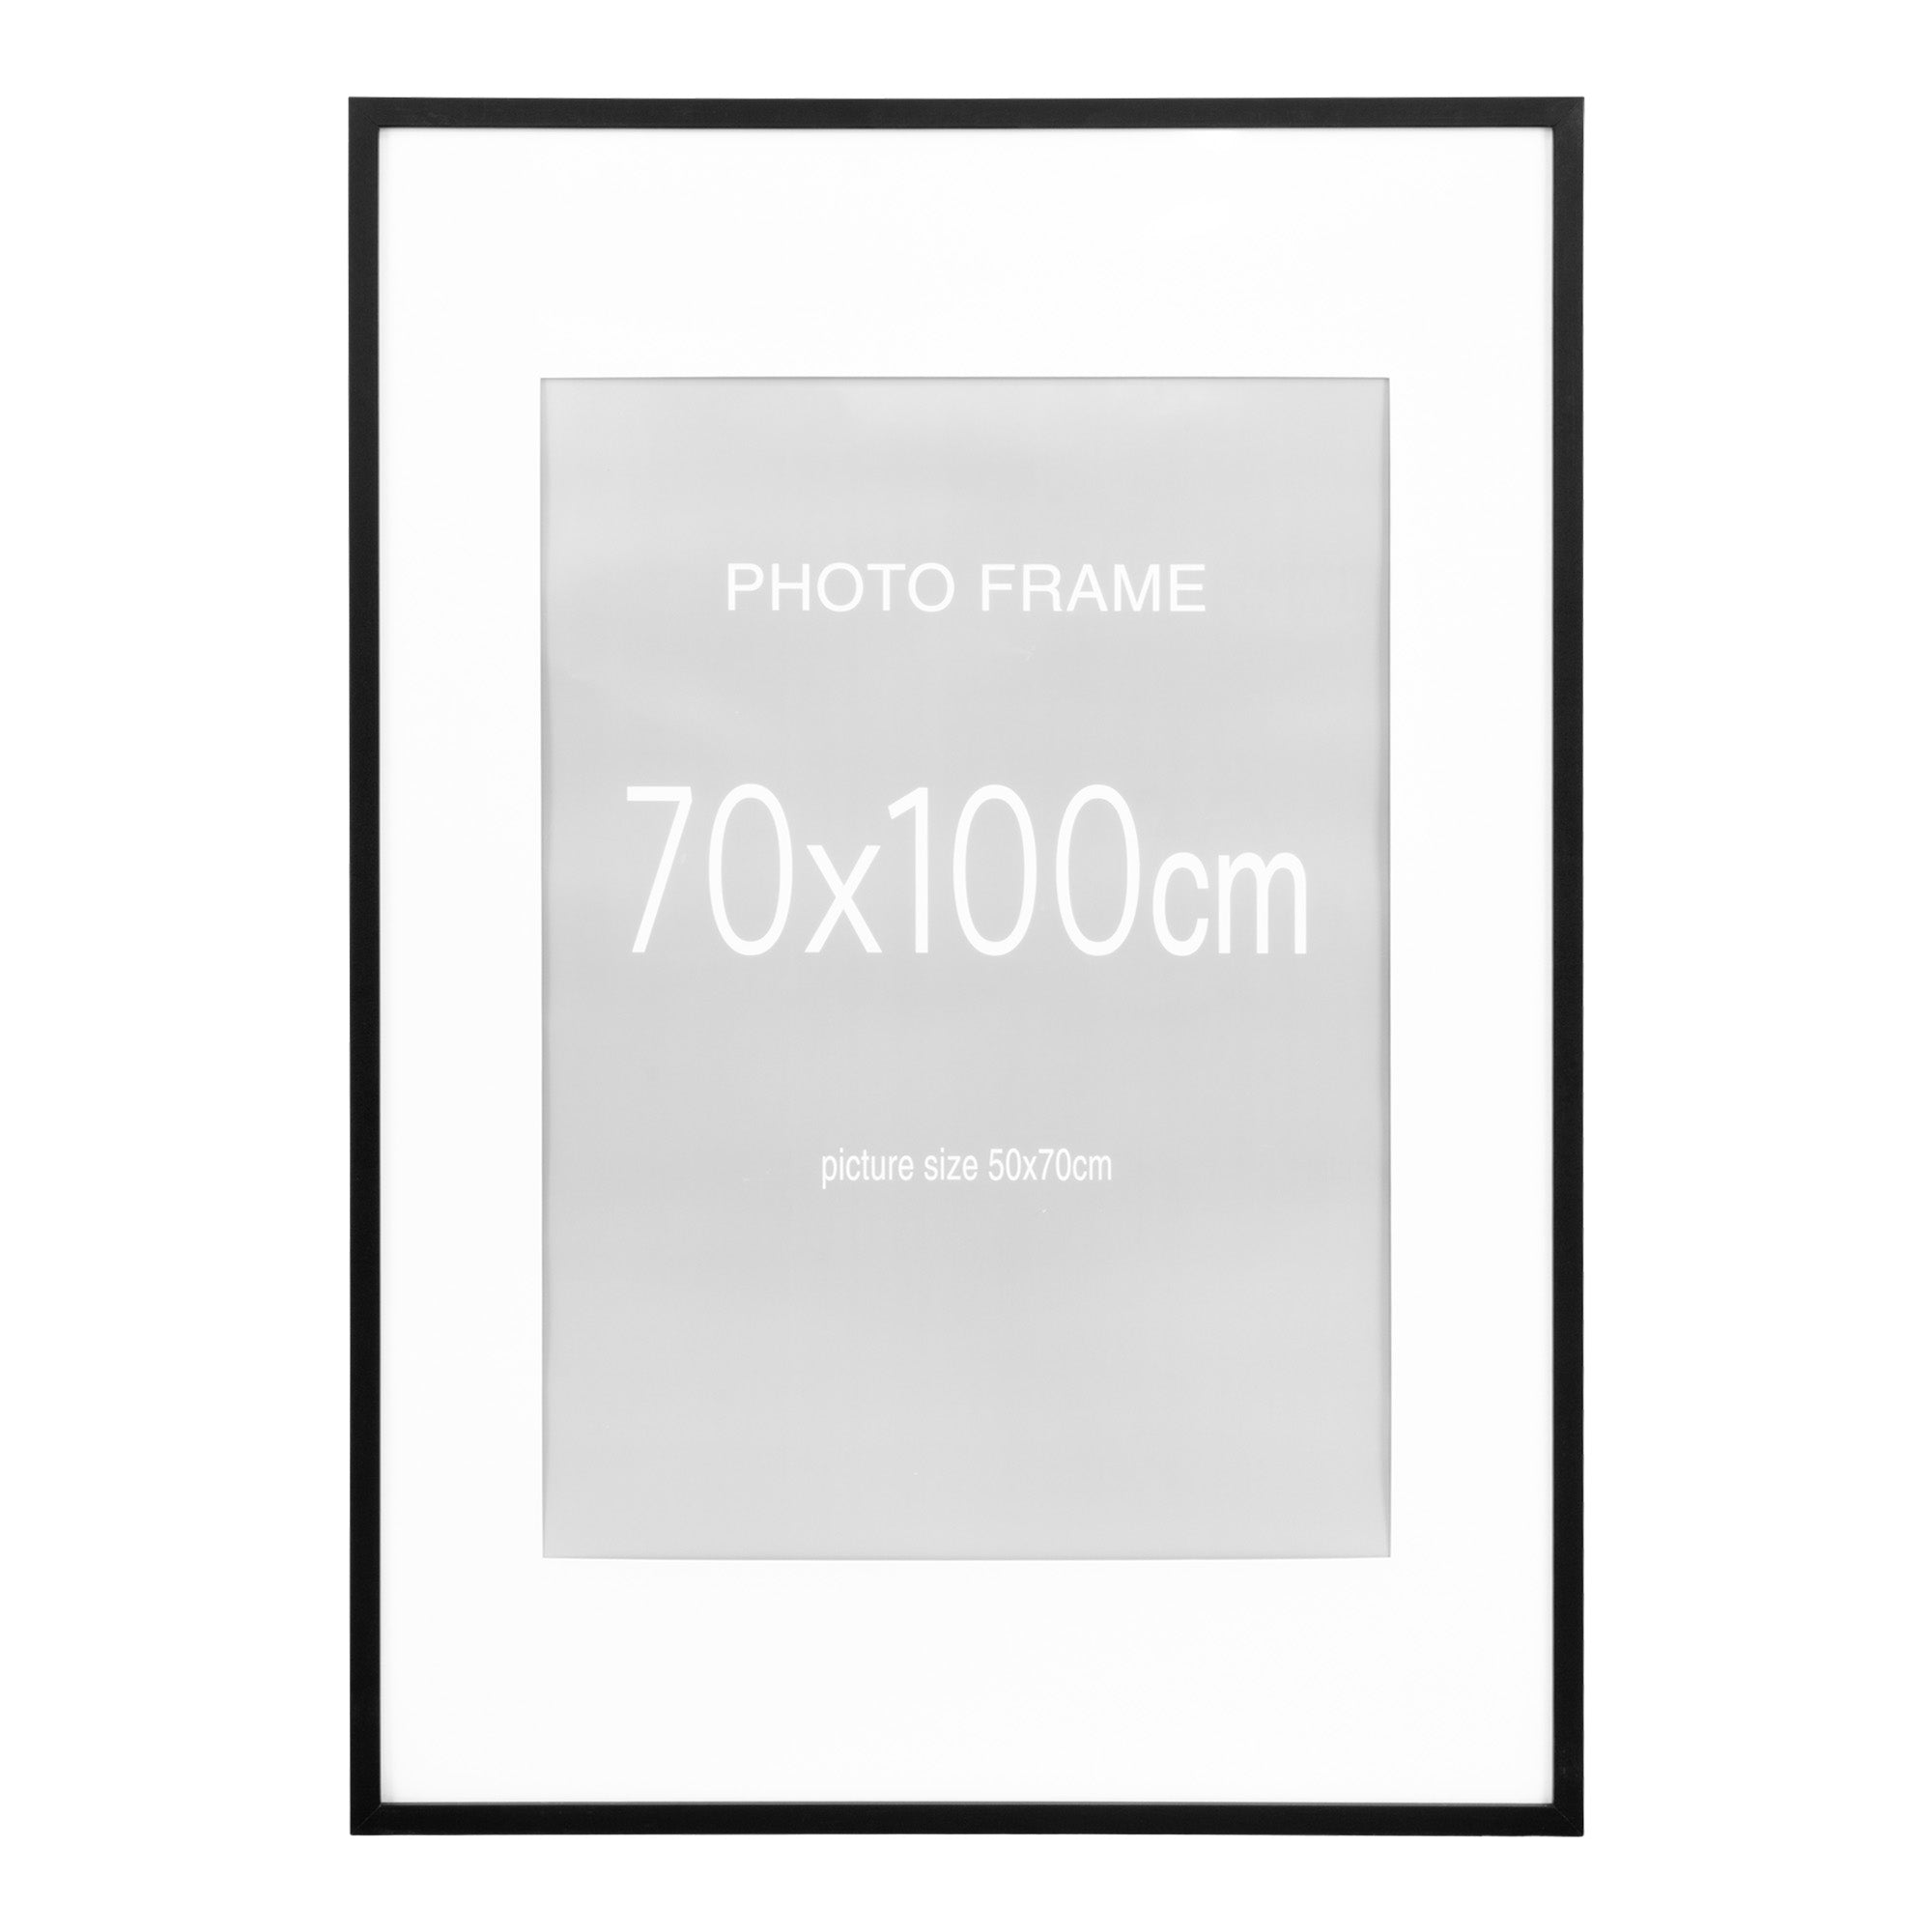 Marbella Ramme Display - Ramme I Mdf, 7 Stk. Sort Og 8 Stk. Natur, 70X100 Cm ⎮ 5713917016716 ⎮ 4981006 